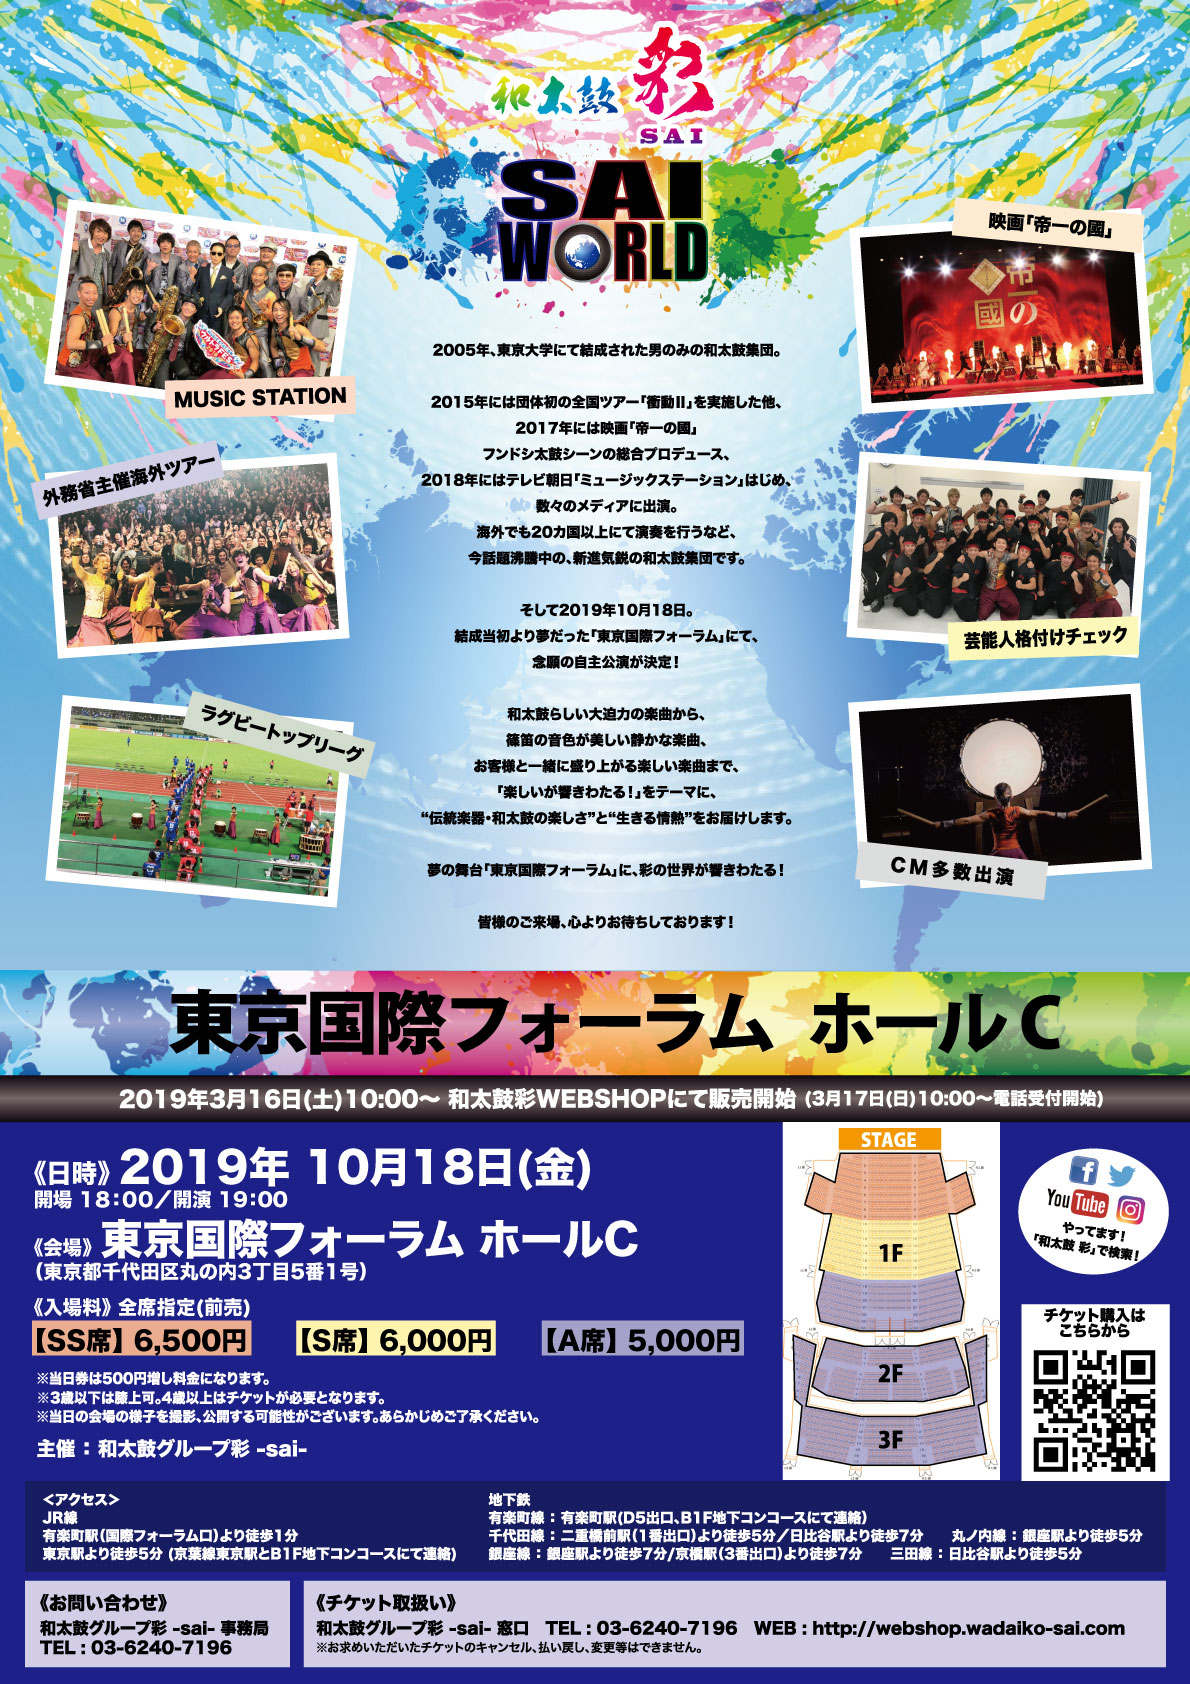 東京都 東京国際フォーラム公演 Sai World 和太鼓グループ彩 Sai 公式hp